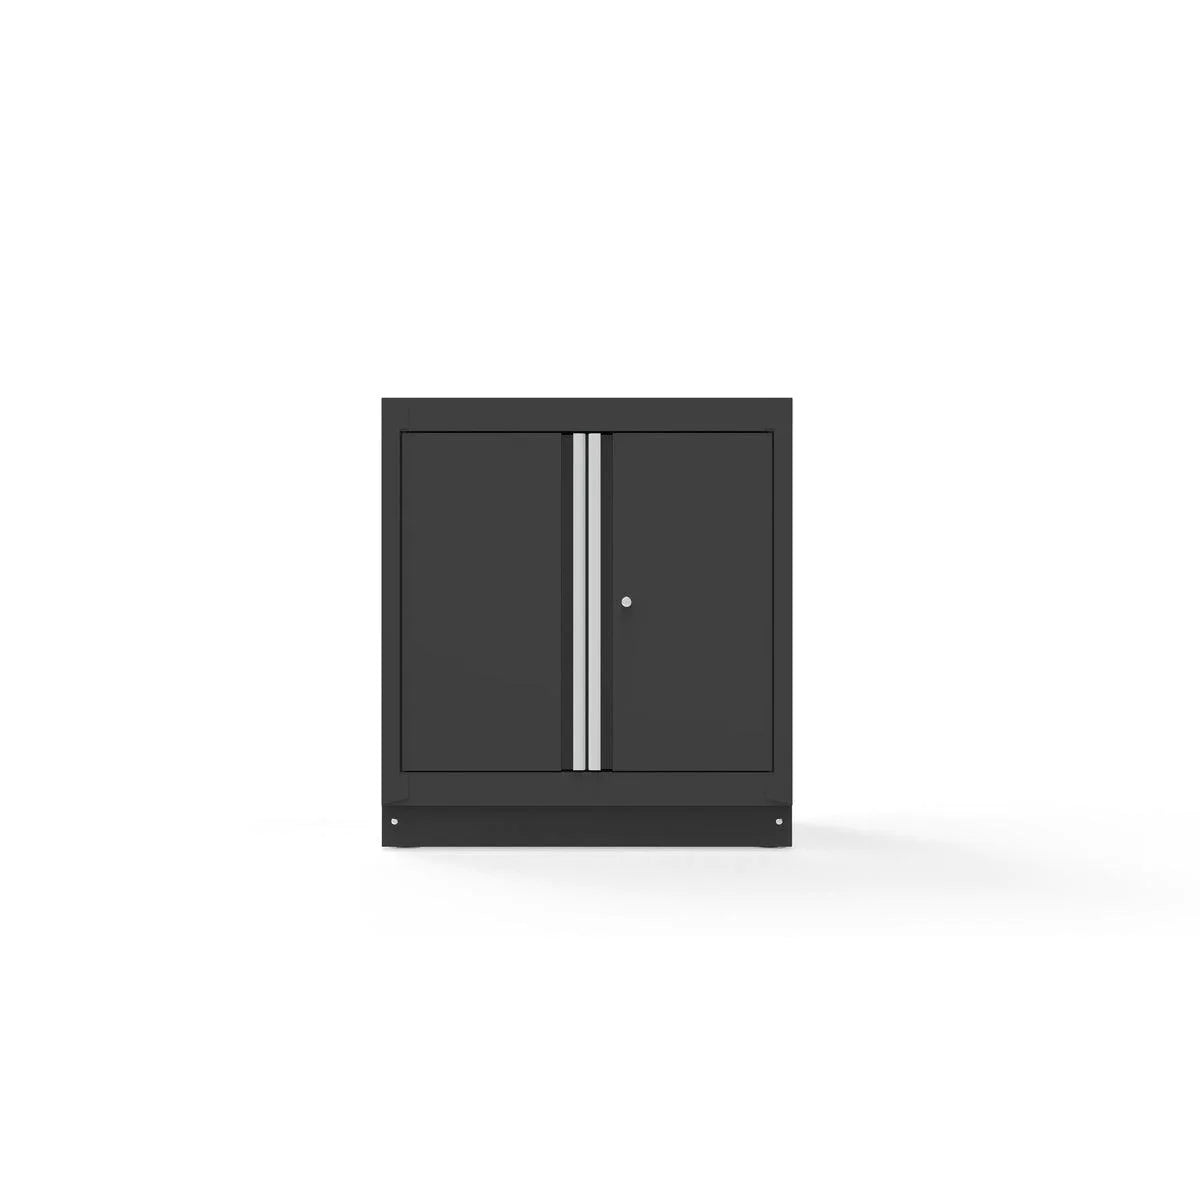 34" Double-Door Closet with Aluminum Handles, Dark Grey